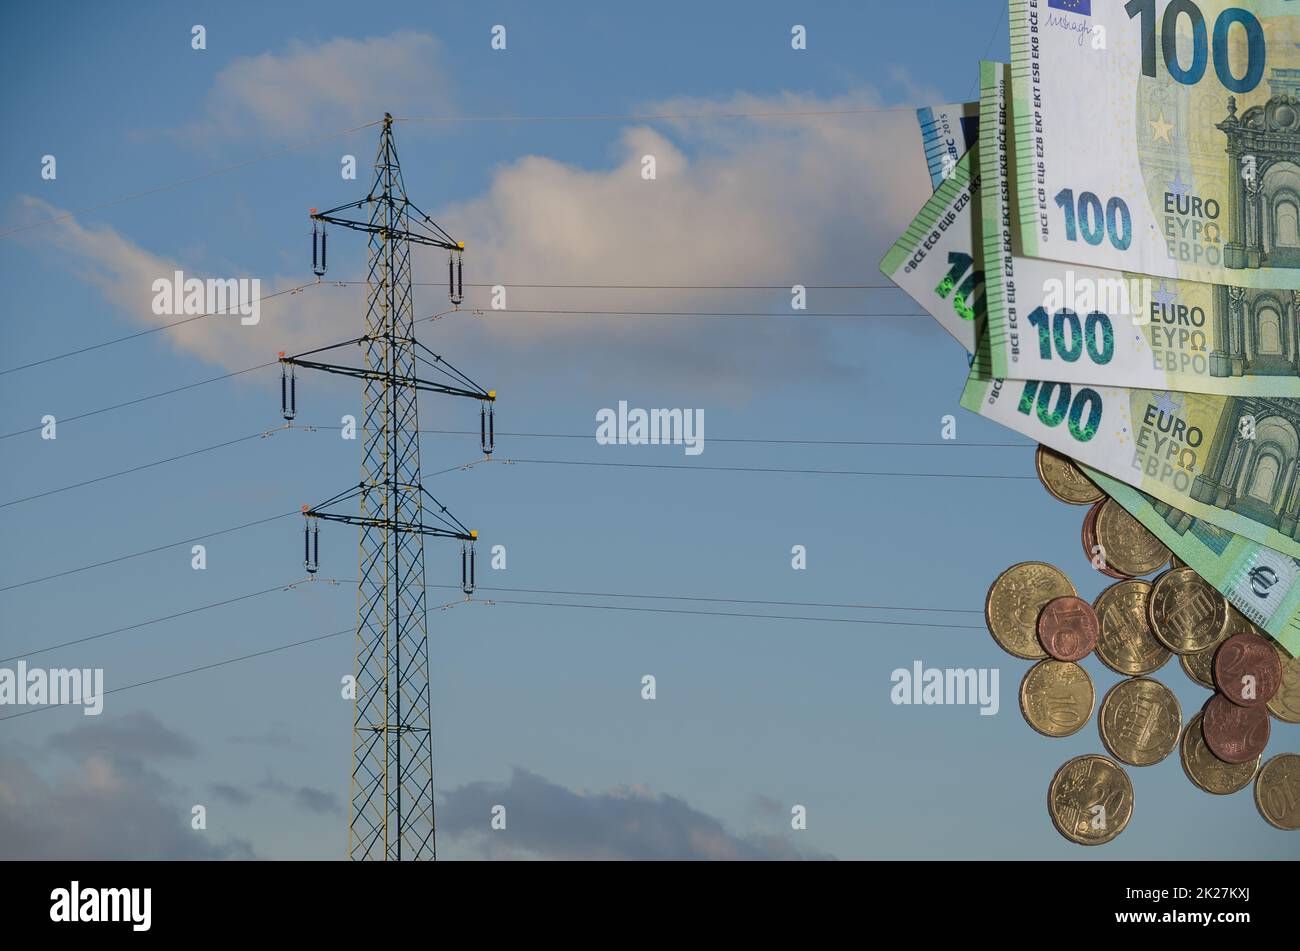 pylône d'électricité unique avec de nombreuses factures et pièces en euros en ce qui concerne les augmentations de prix de l'électricité Banque D'Images